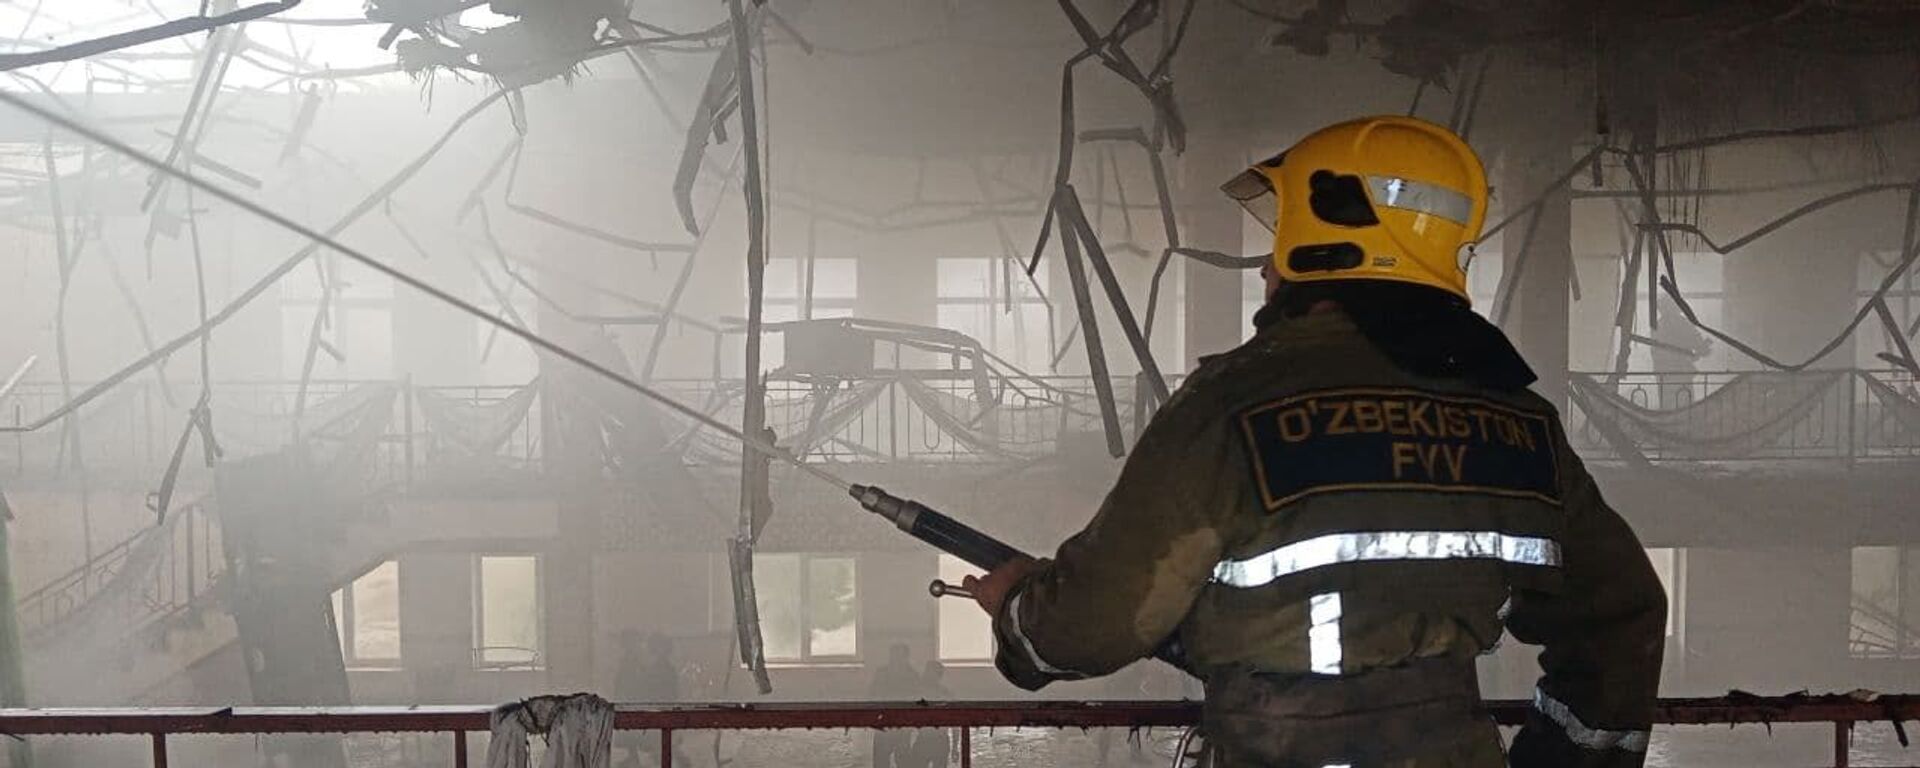 Спасатели МЧС ликвидировали пожар, вспыхнувший в одном из ресторанов Самаркандской области - Sputnik Ўзбекистон, 1920, 13.03.2021